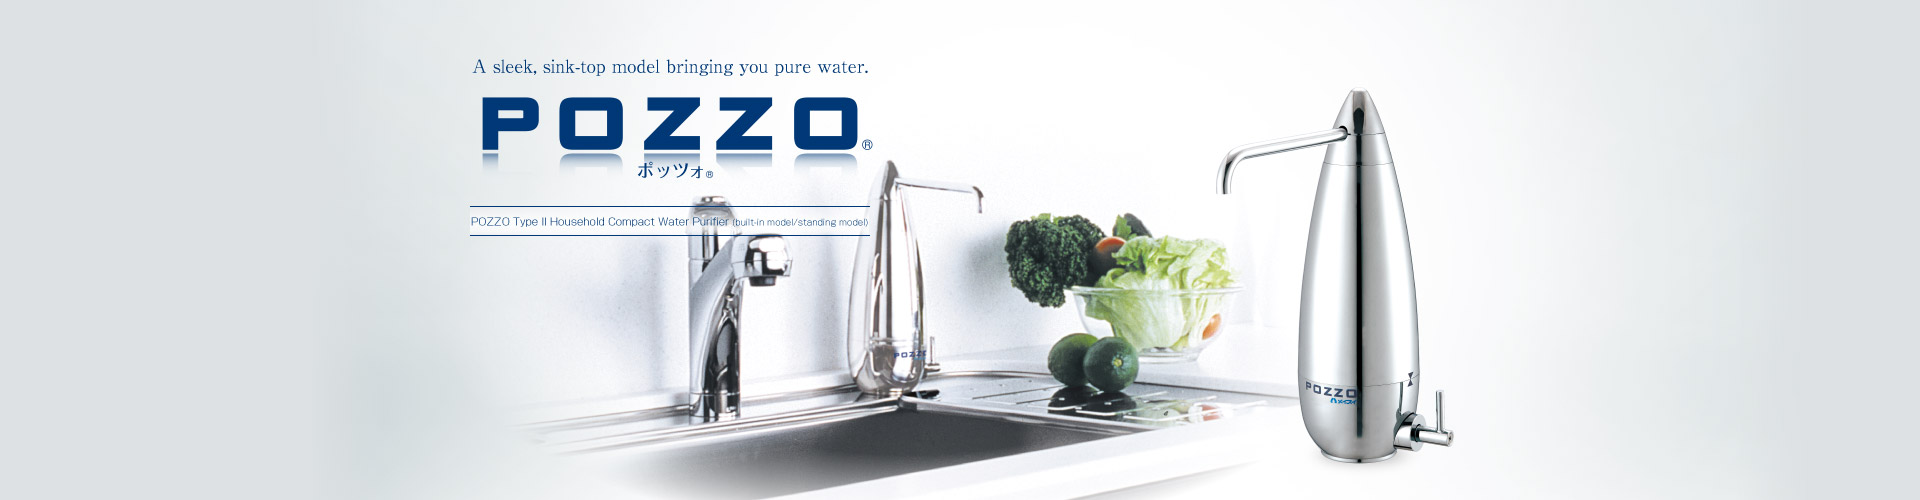 POZZO® Type II Compact Water Purifier